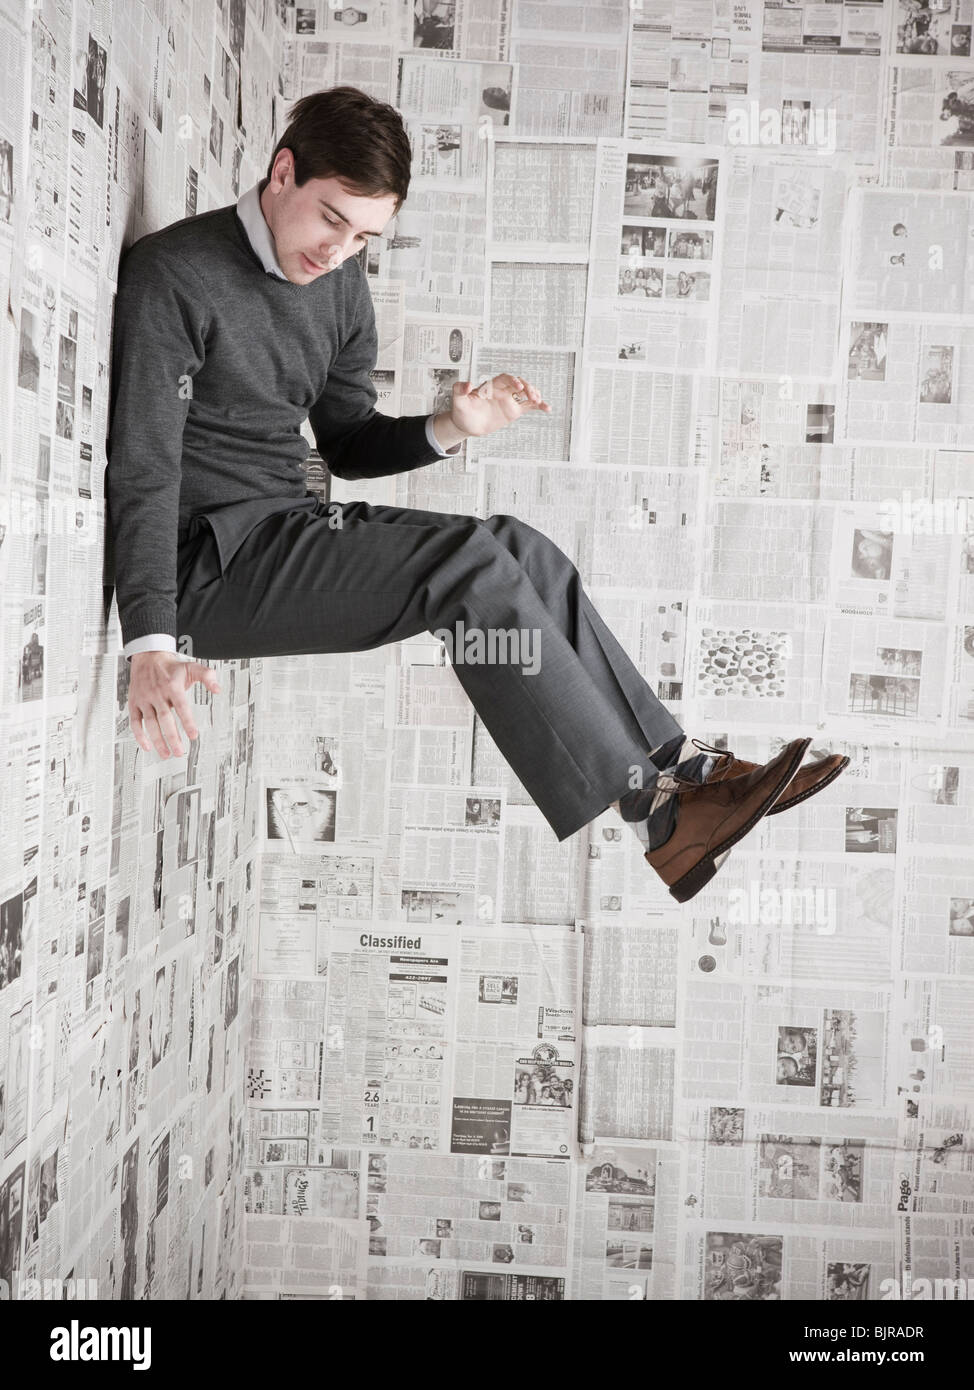 Giovane uomo incollato alla parete ricoperta di quotidiani, studio shot Foto Stock